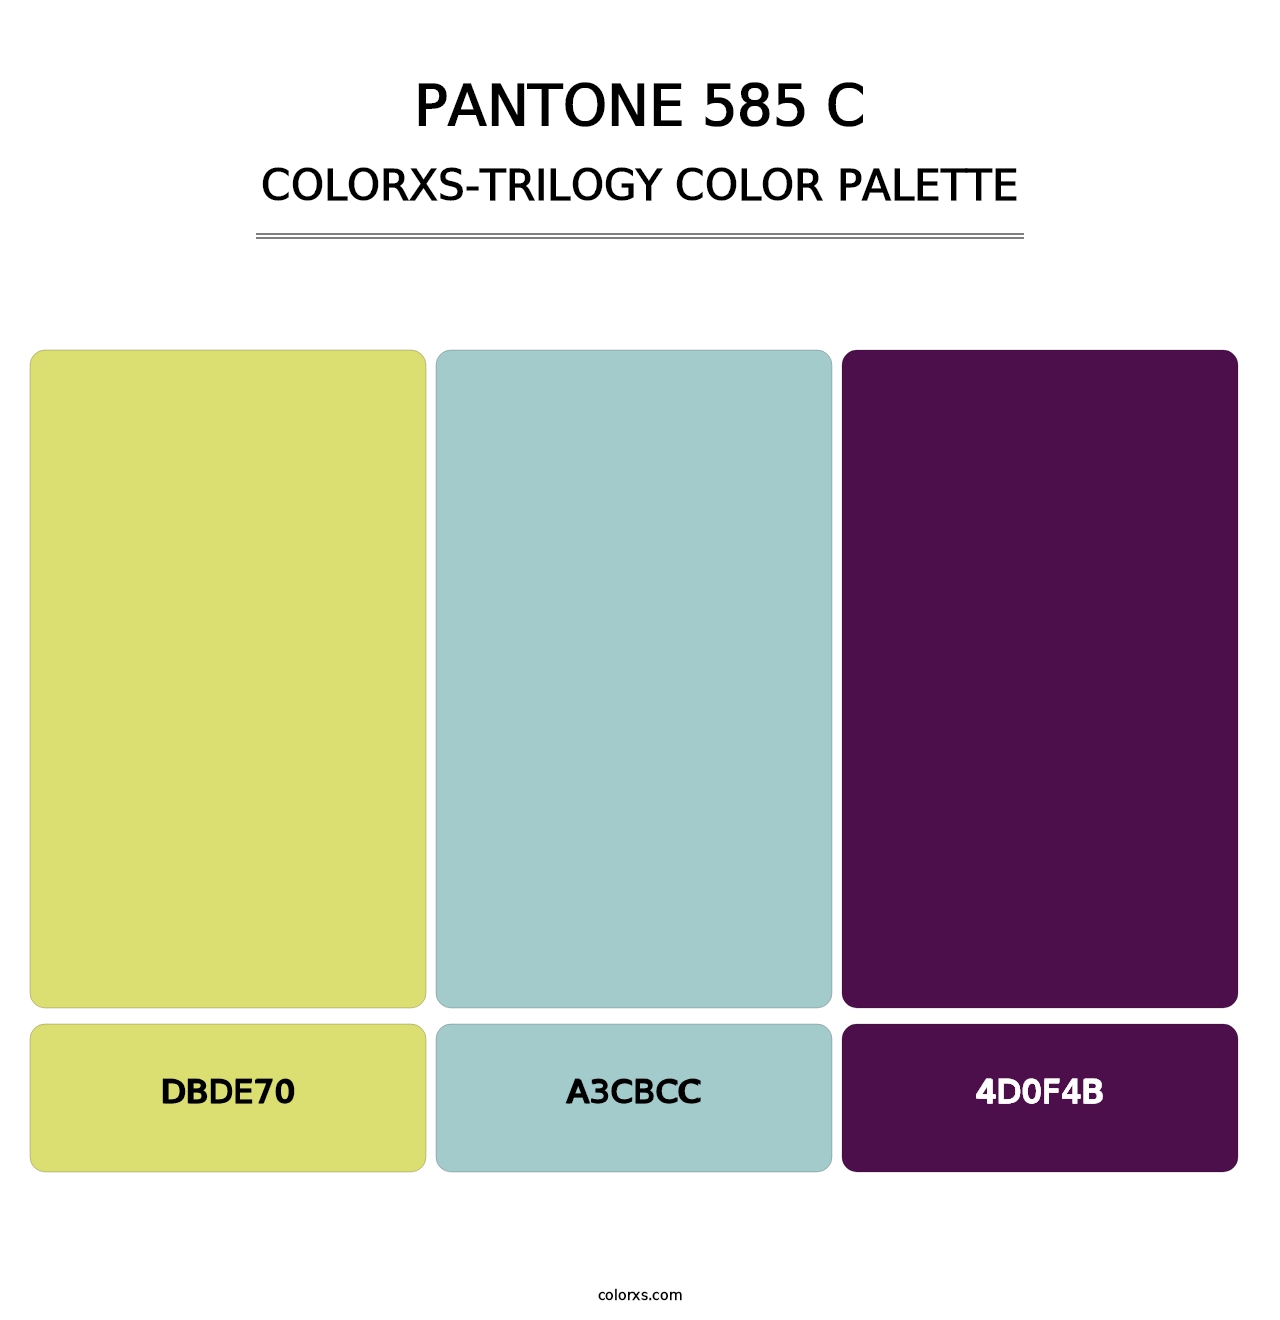 PANTONE 585 C - Colorxs Trilogy Palette